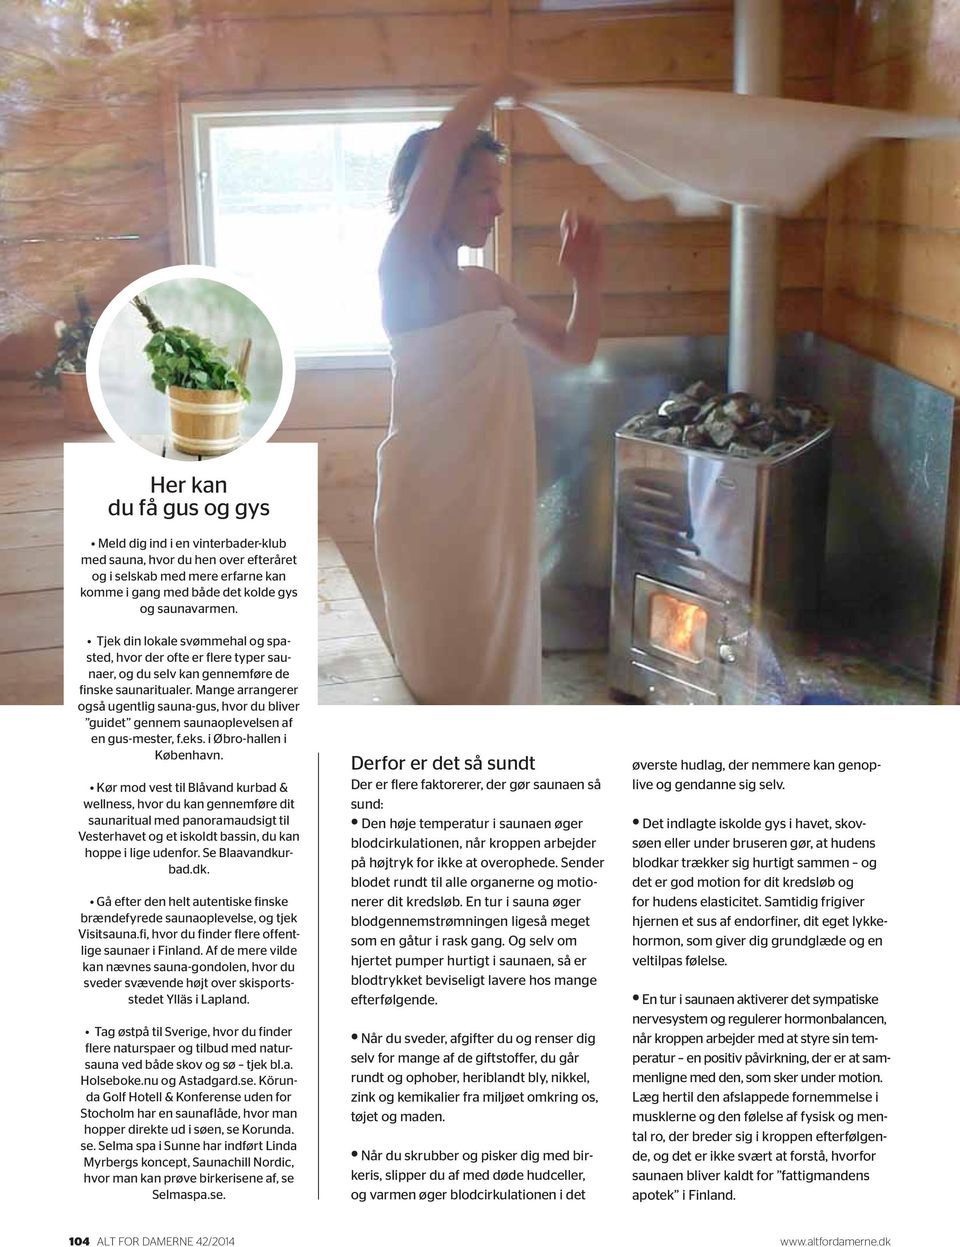 Mange arrangerer også ugentlig sauna-gus, hvor du bliver guidet gennem saunaoplevelsen af en gus-mester, f.eks. i Øbro-hallen i København.